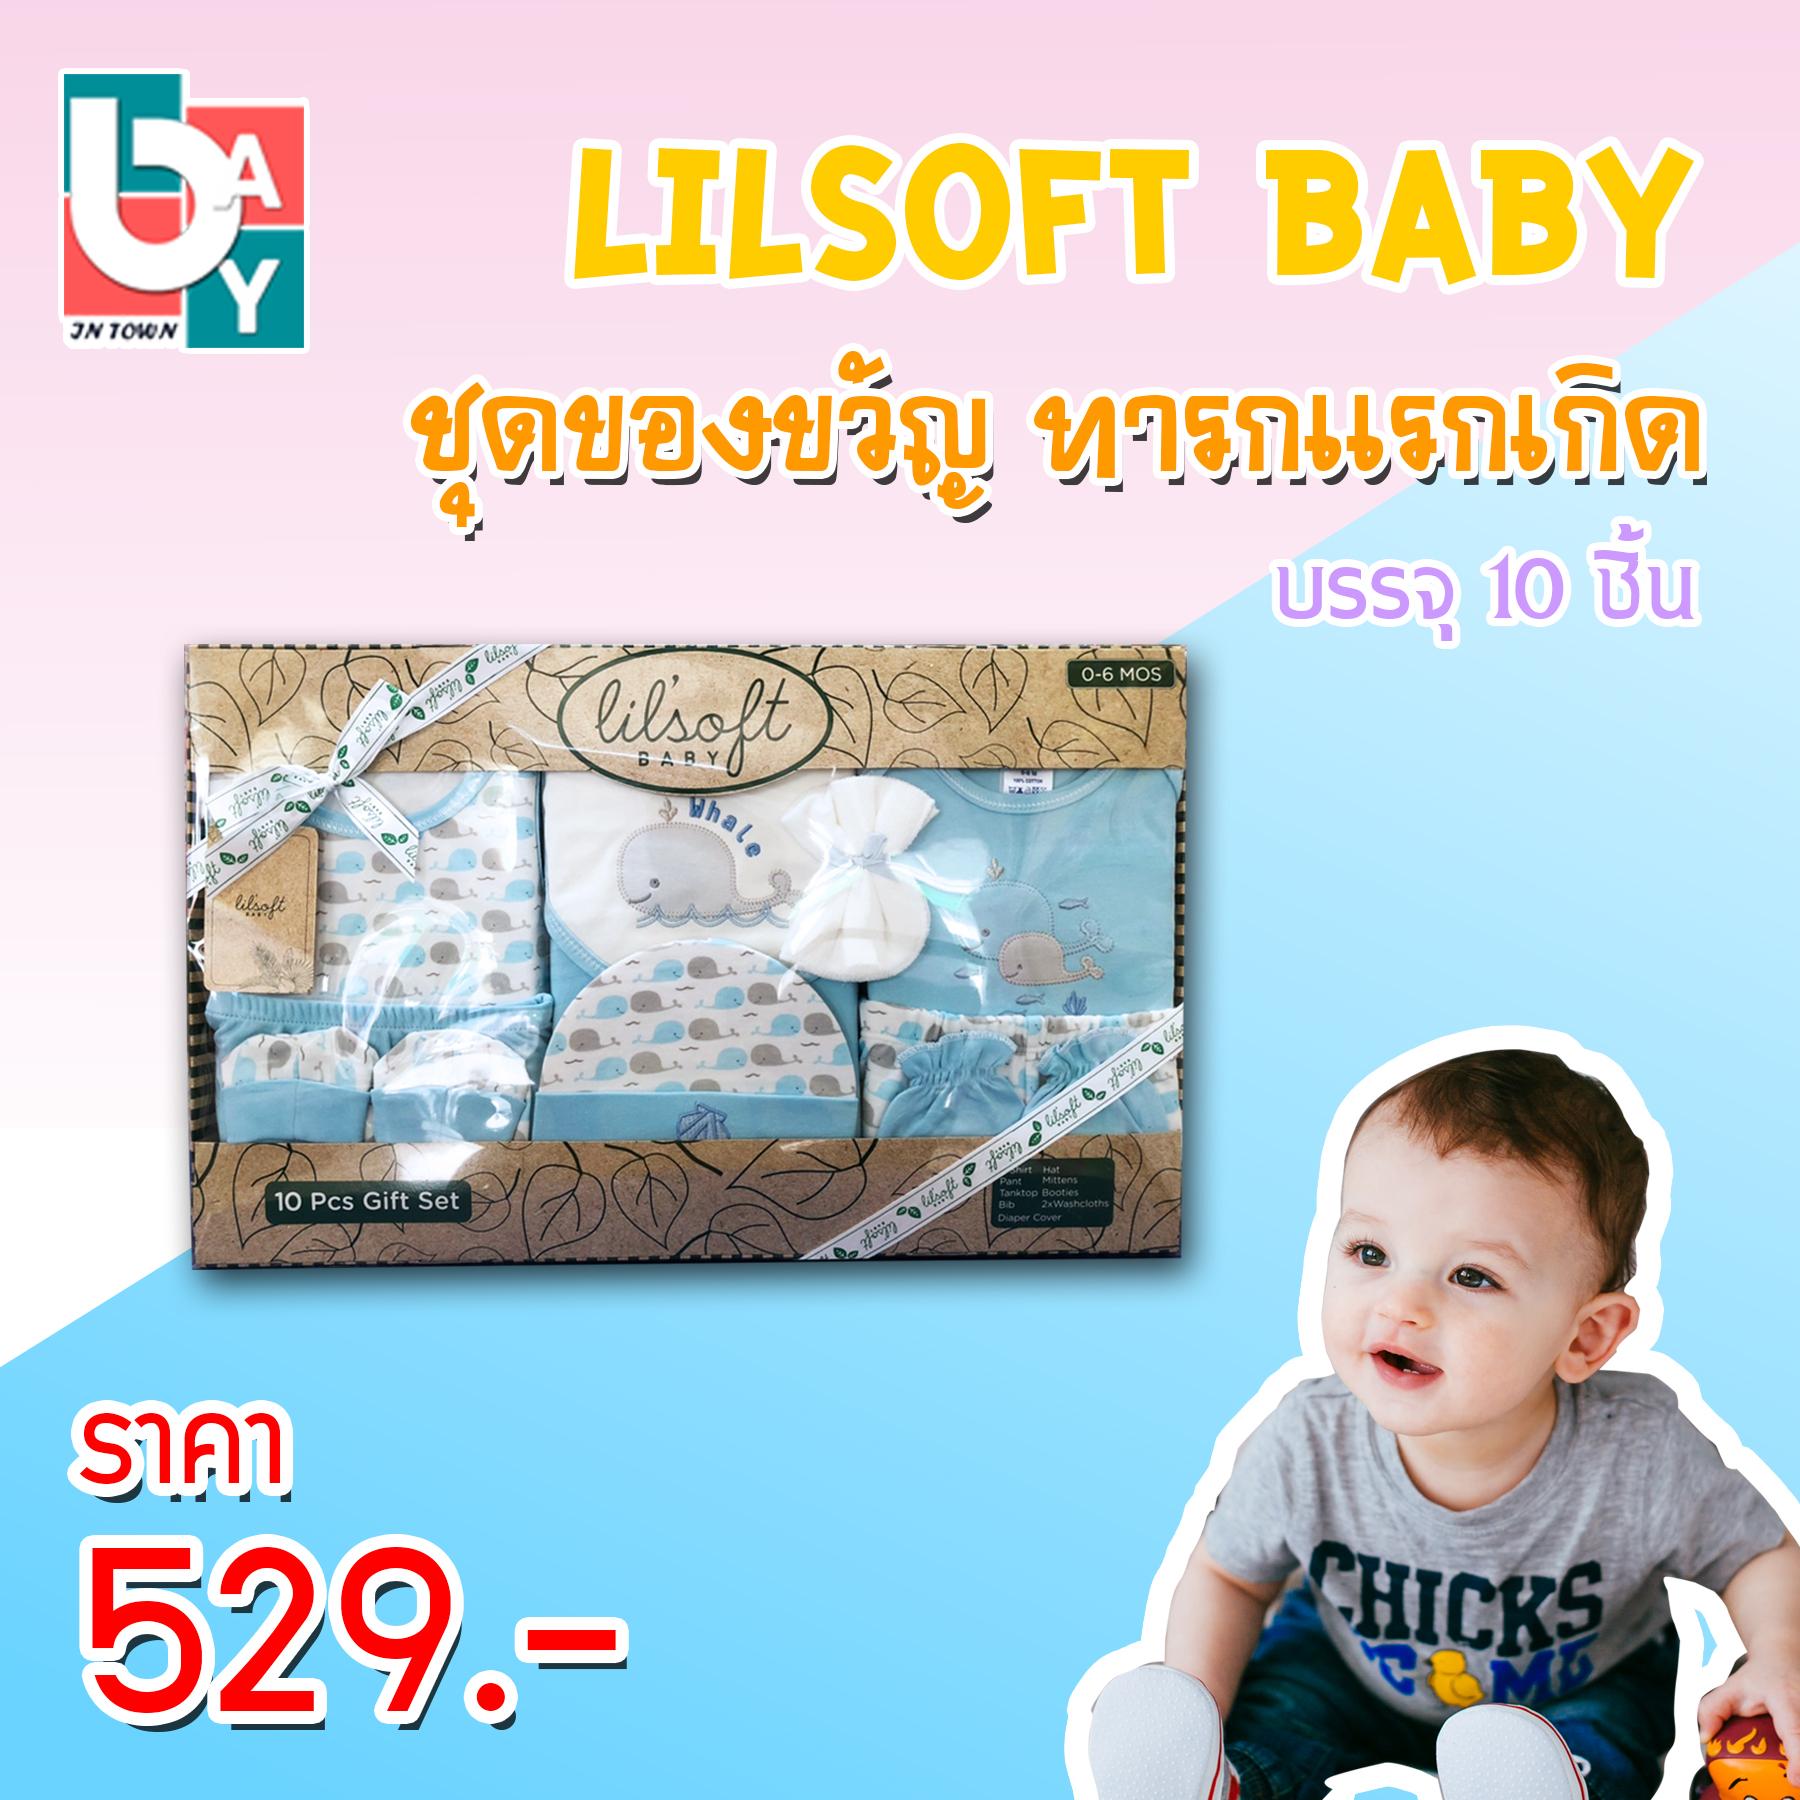 Lilsoft Baby Gift Set 10 ชิ้น ชุดของขวัญเด็กแรกเกิด เยี่ยมคลอด ชุดของขวัญสำหรับทารกเเรกเกิด สินค้าเกรด A คุณภาพดี สินค้าคุณภาพจาก Lilsoft เนื้อผ้านุ่ม Giftset กิ๊ฟเซ็ต สินค้าเด็กอ่อน สีฟ้า